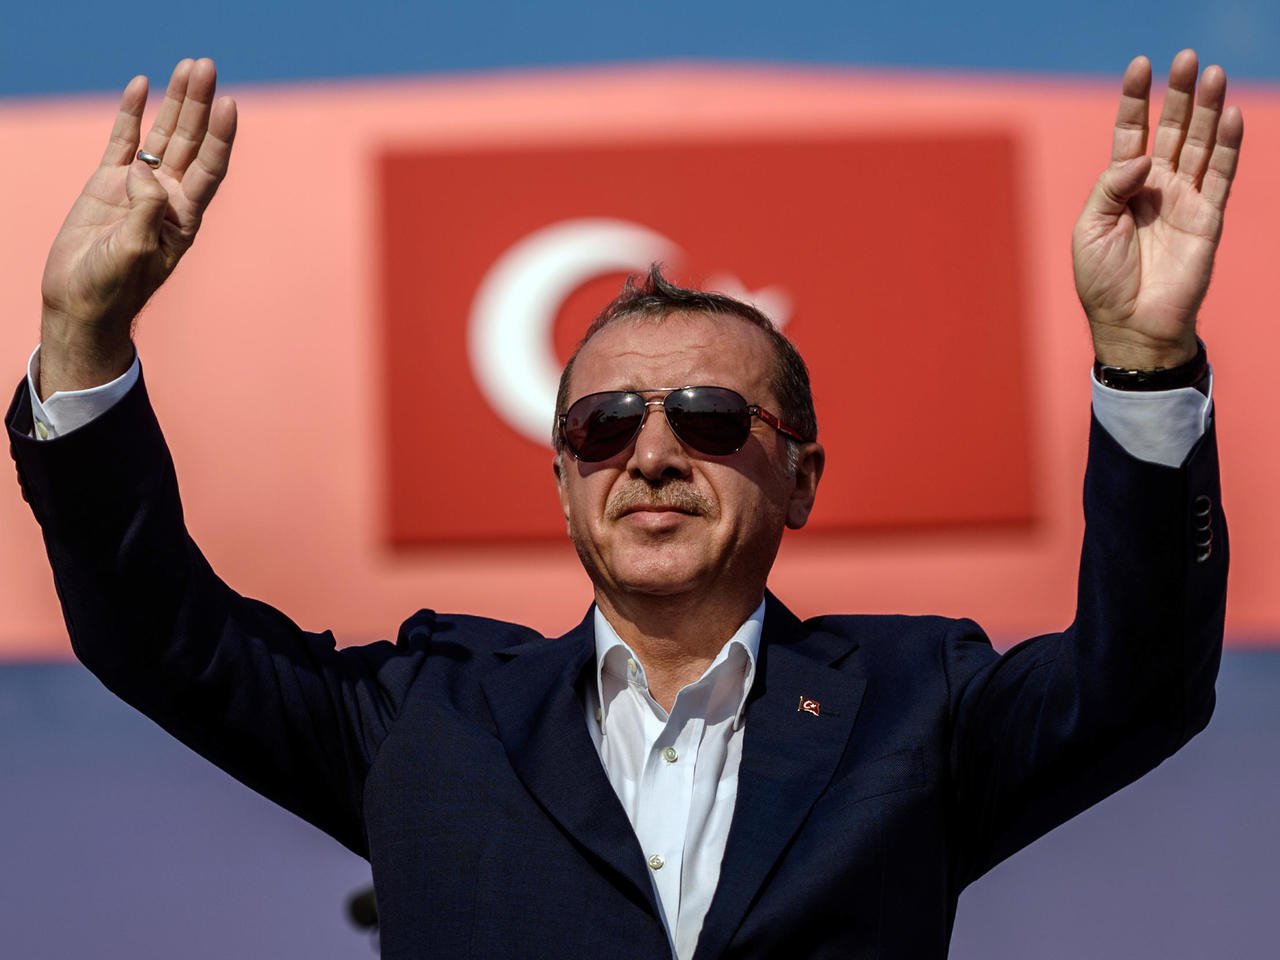 Ερντογάν νέες δηλώσεις: “Είτε θα το καταλάβουν πολιτικά, είτε θα το βιώσουν οδυνηρά”